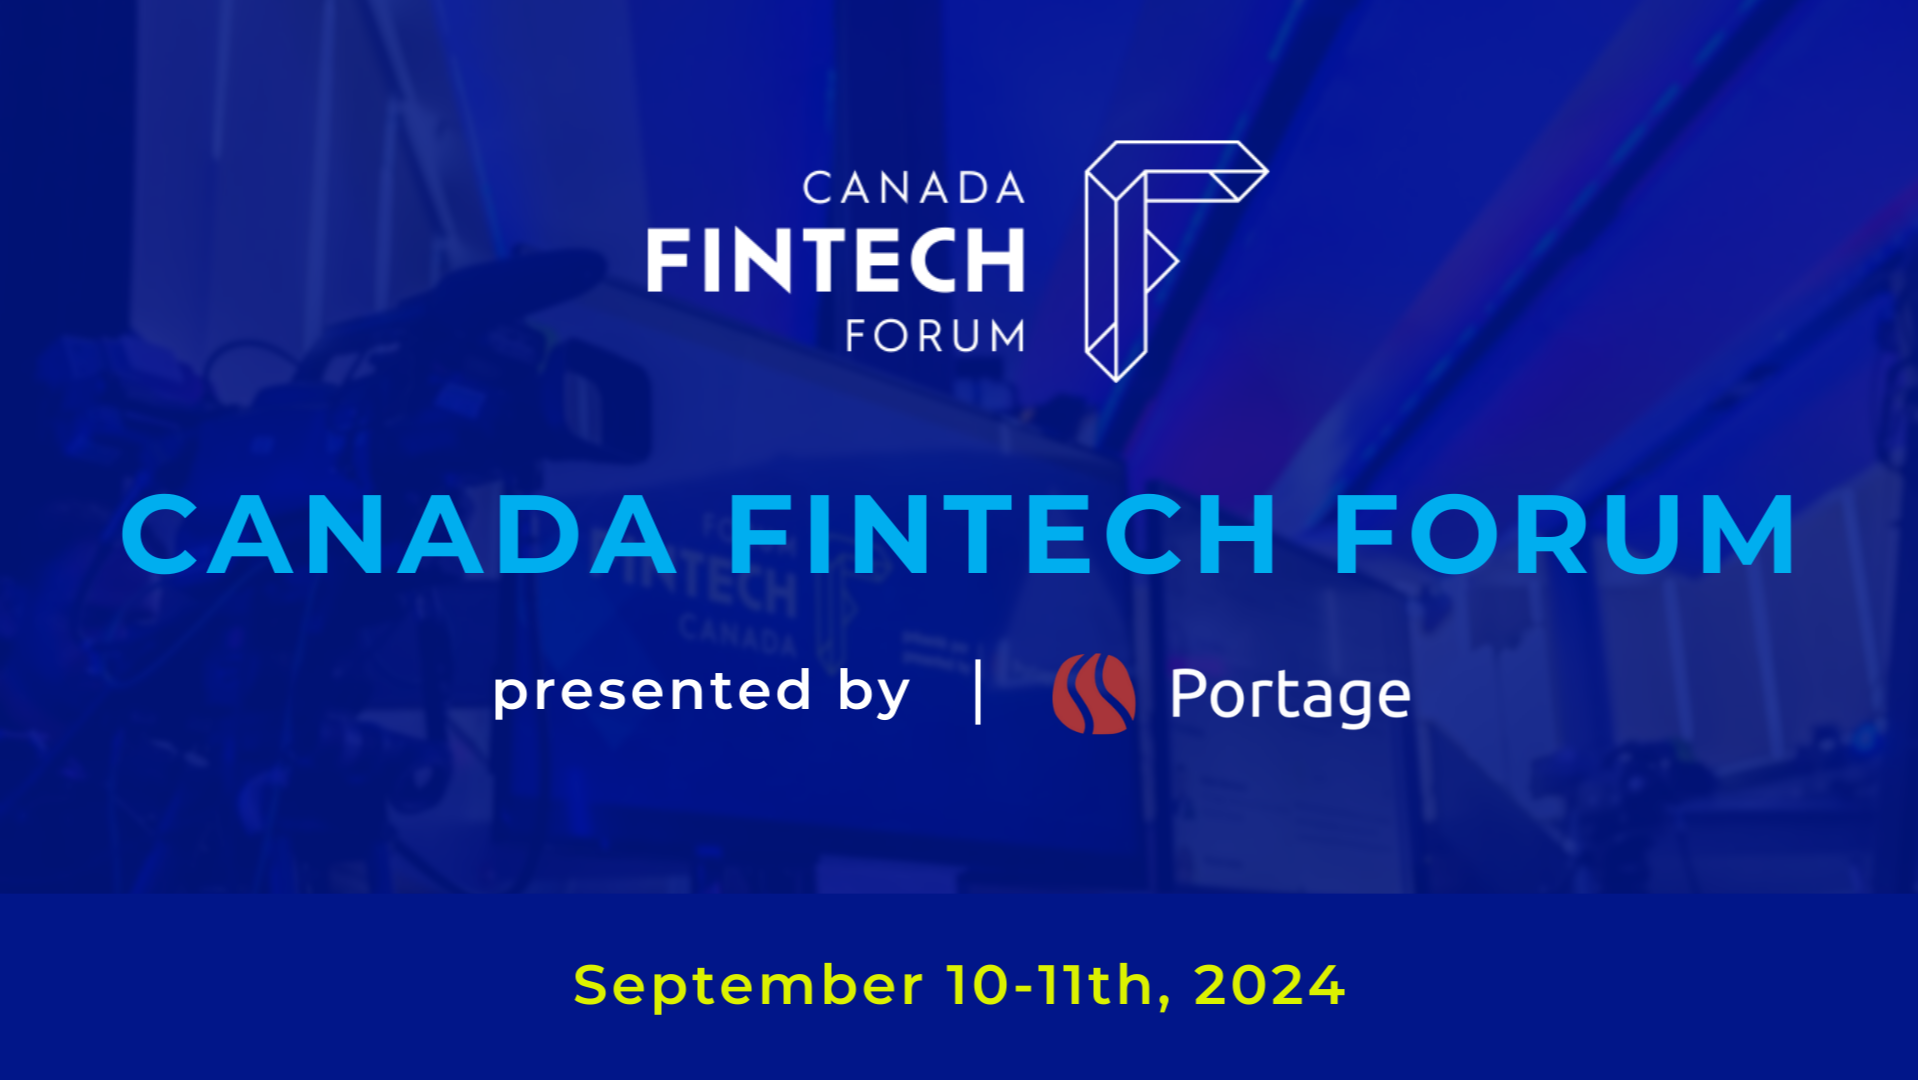 Forum Fintech Canada 2024